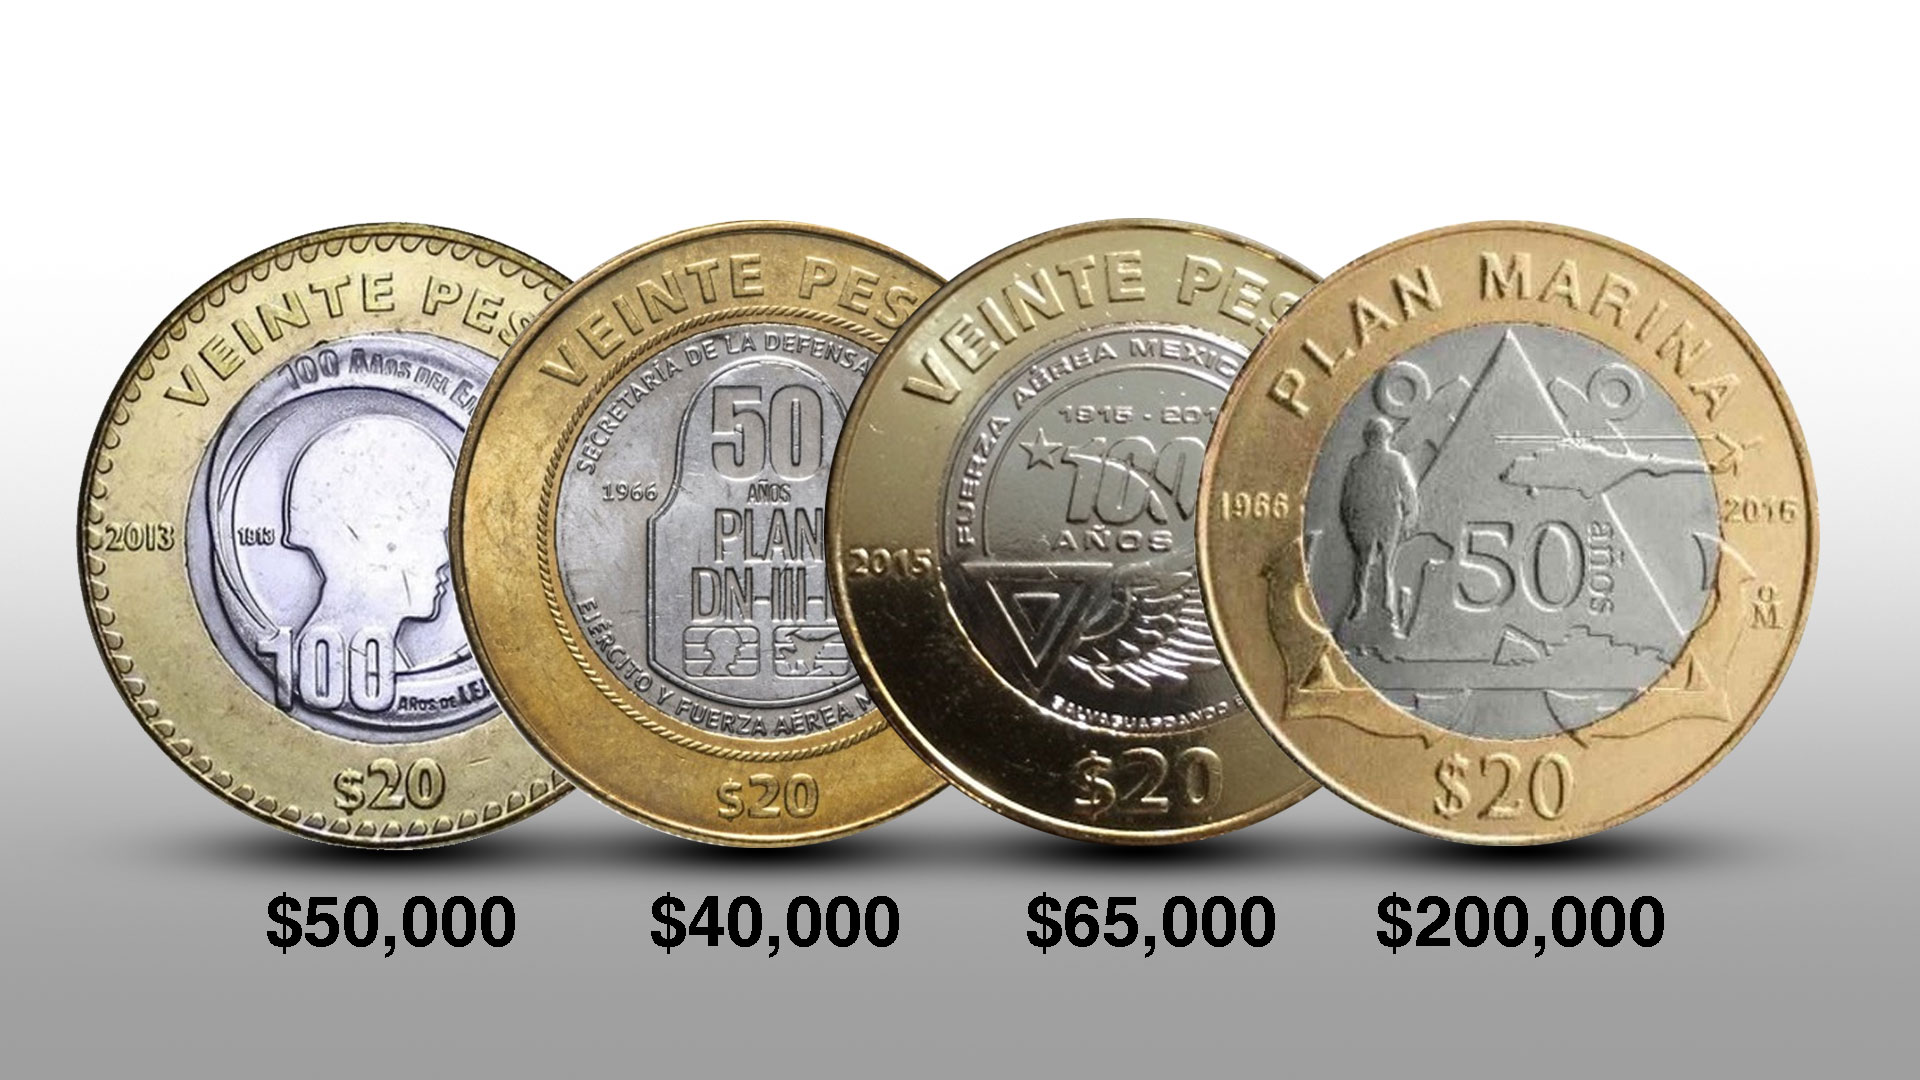 4 monedas del Ejército a precios exorbitantes: una de ellas se cotiza en 200 mil pesos en línea